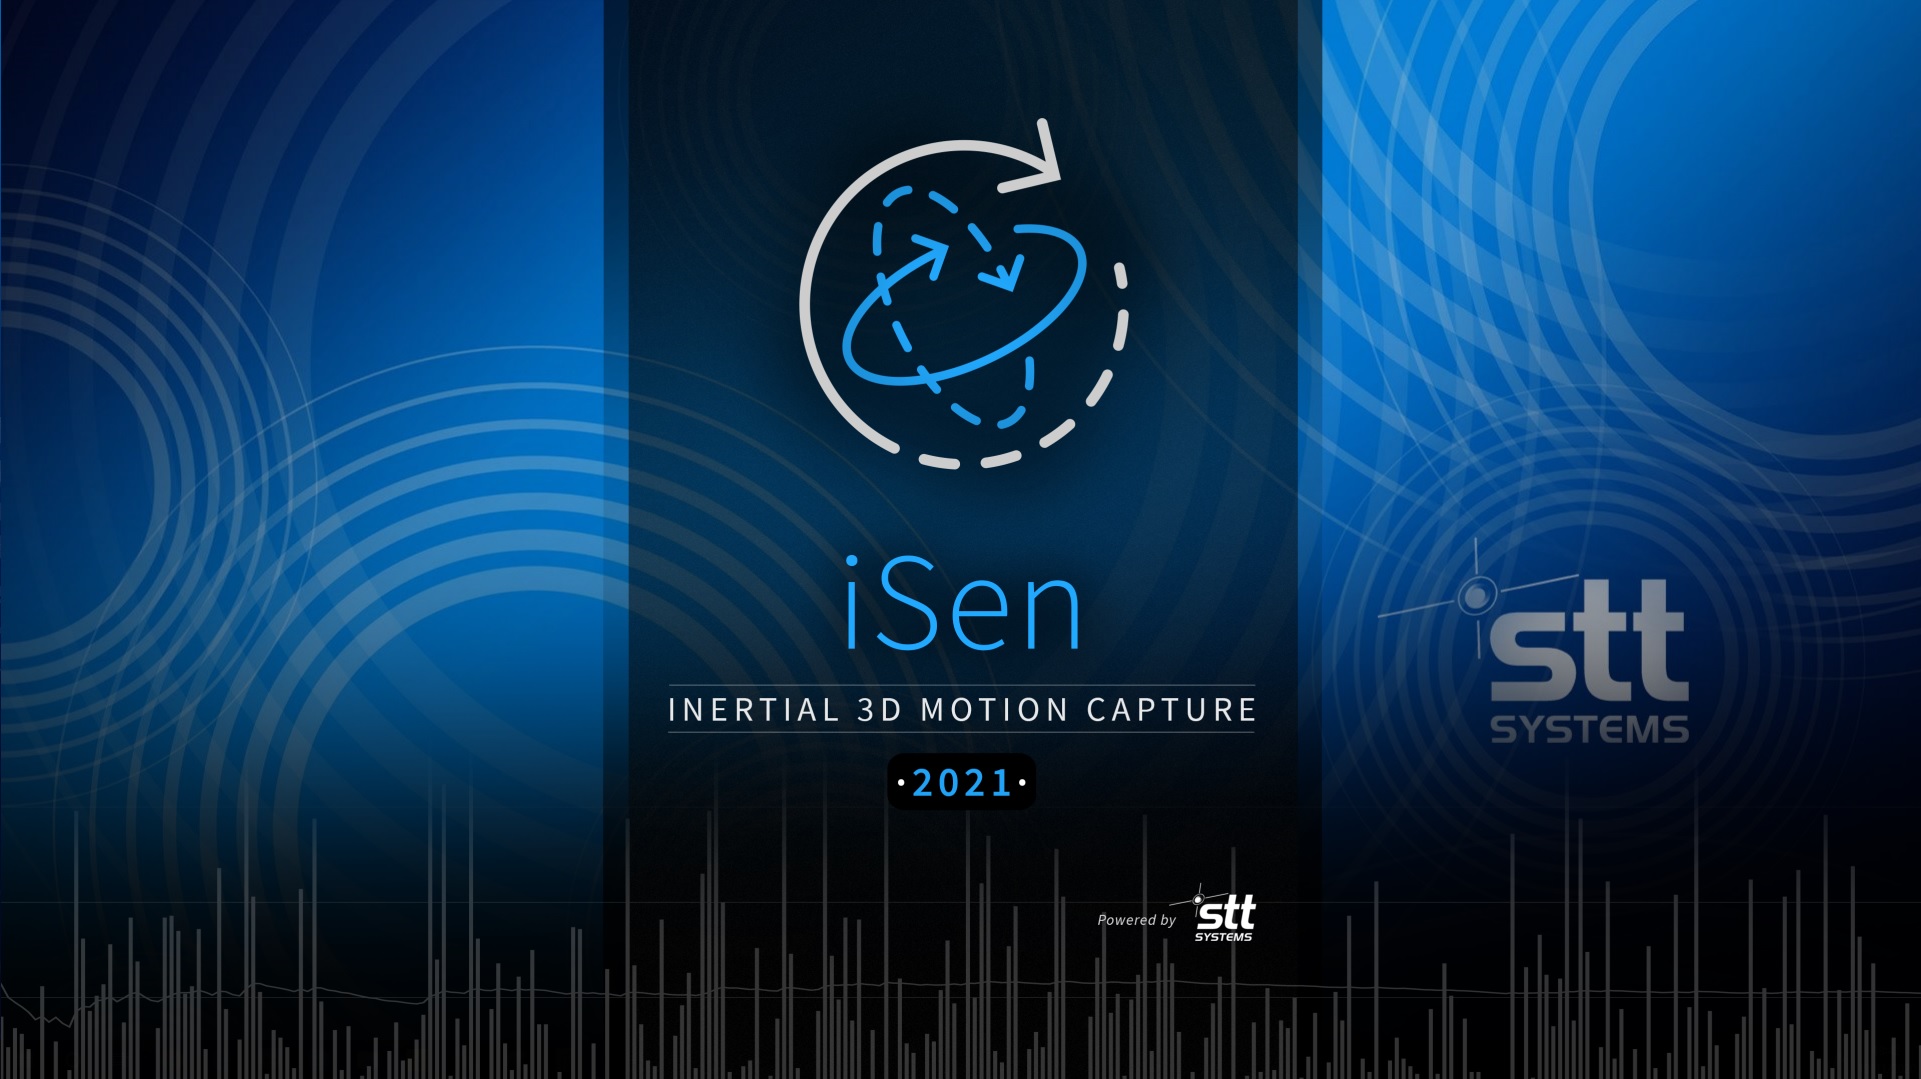 2021 iSen Version has been released